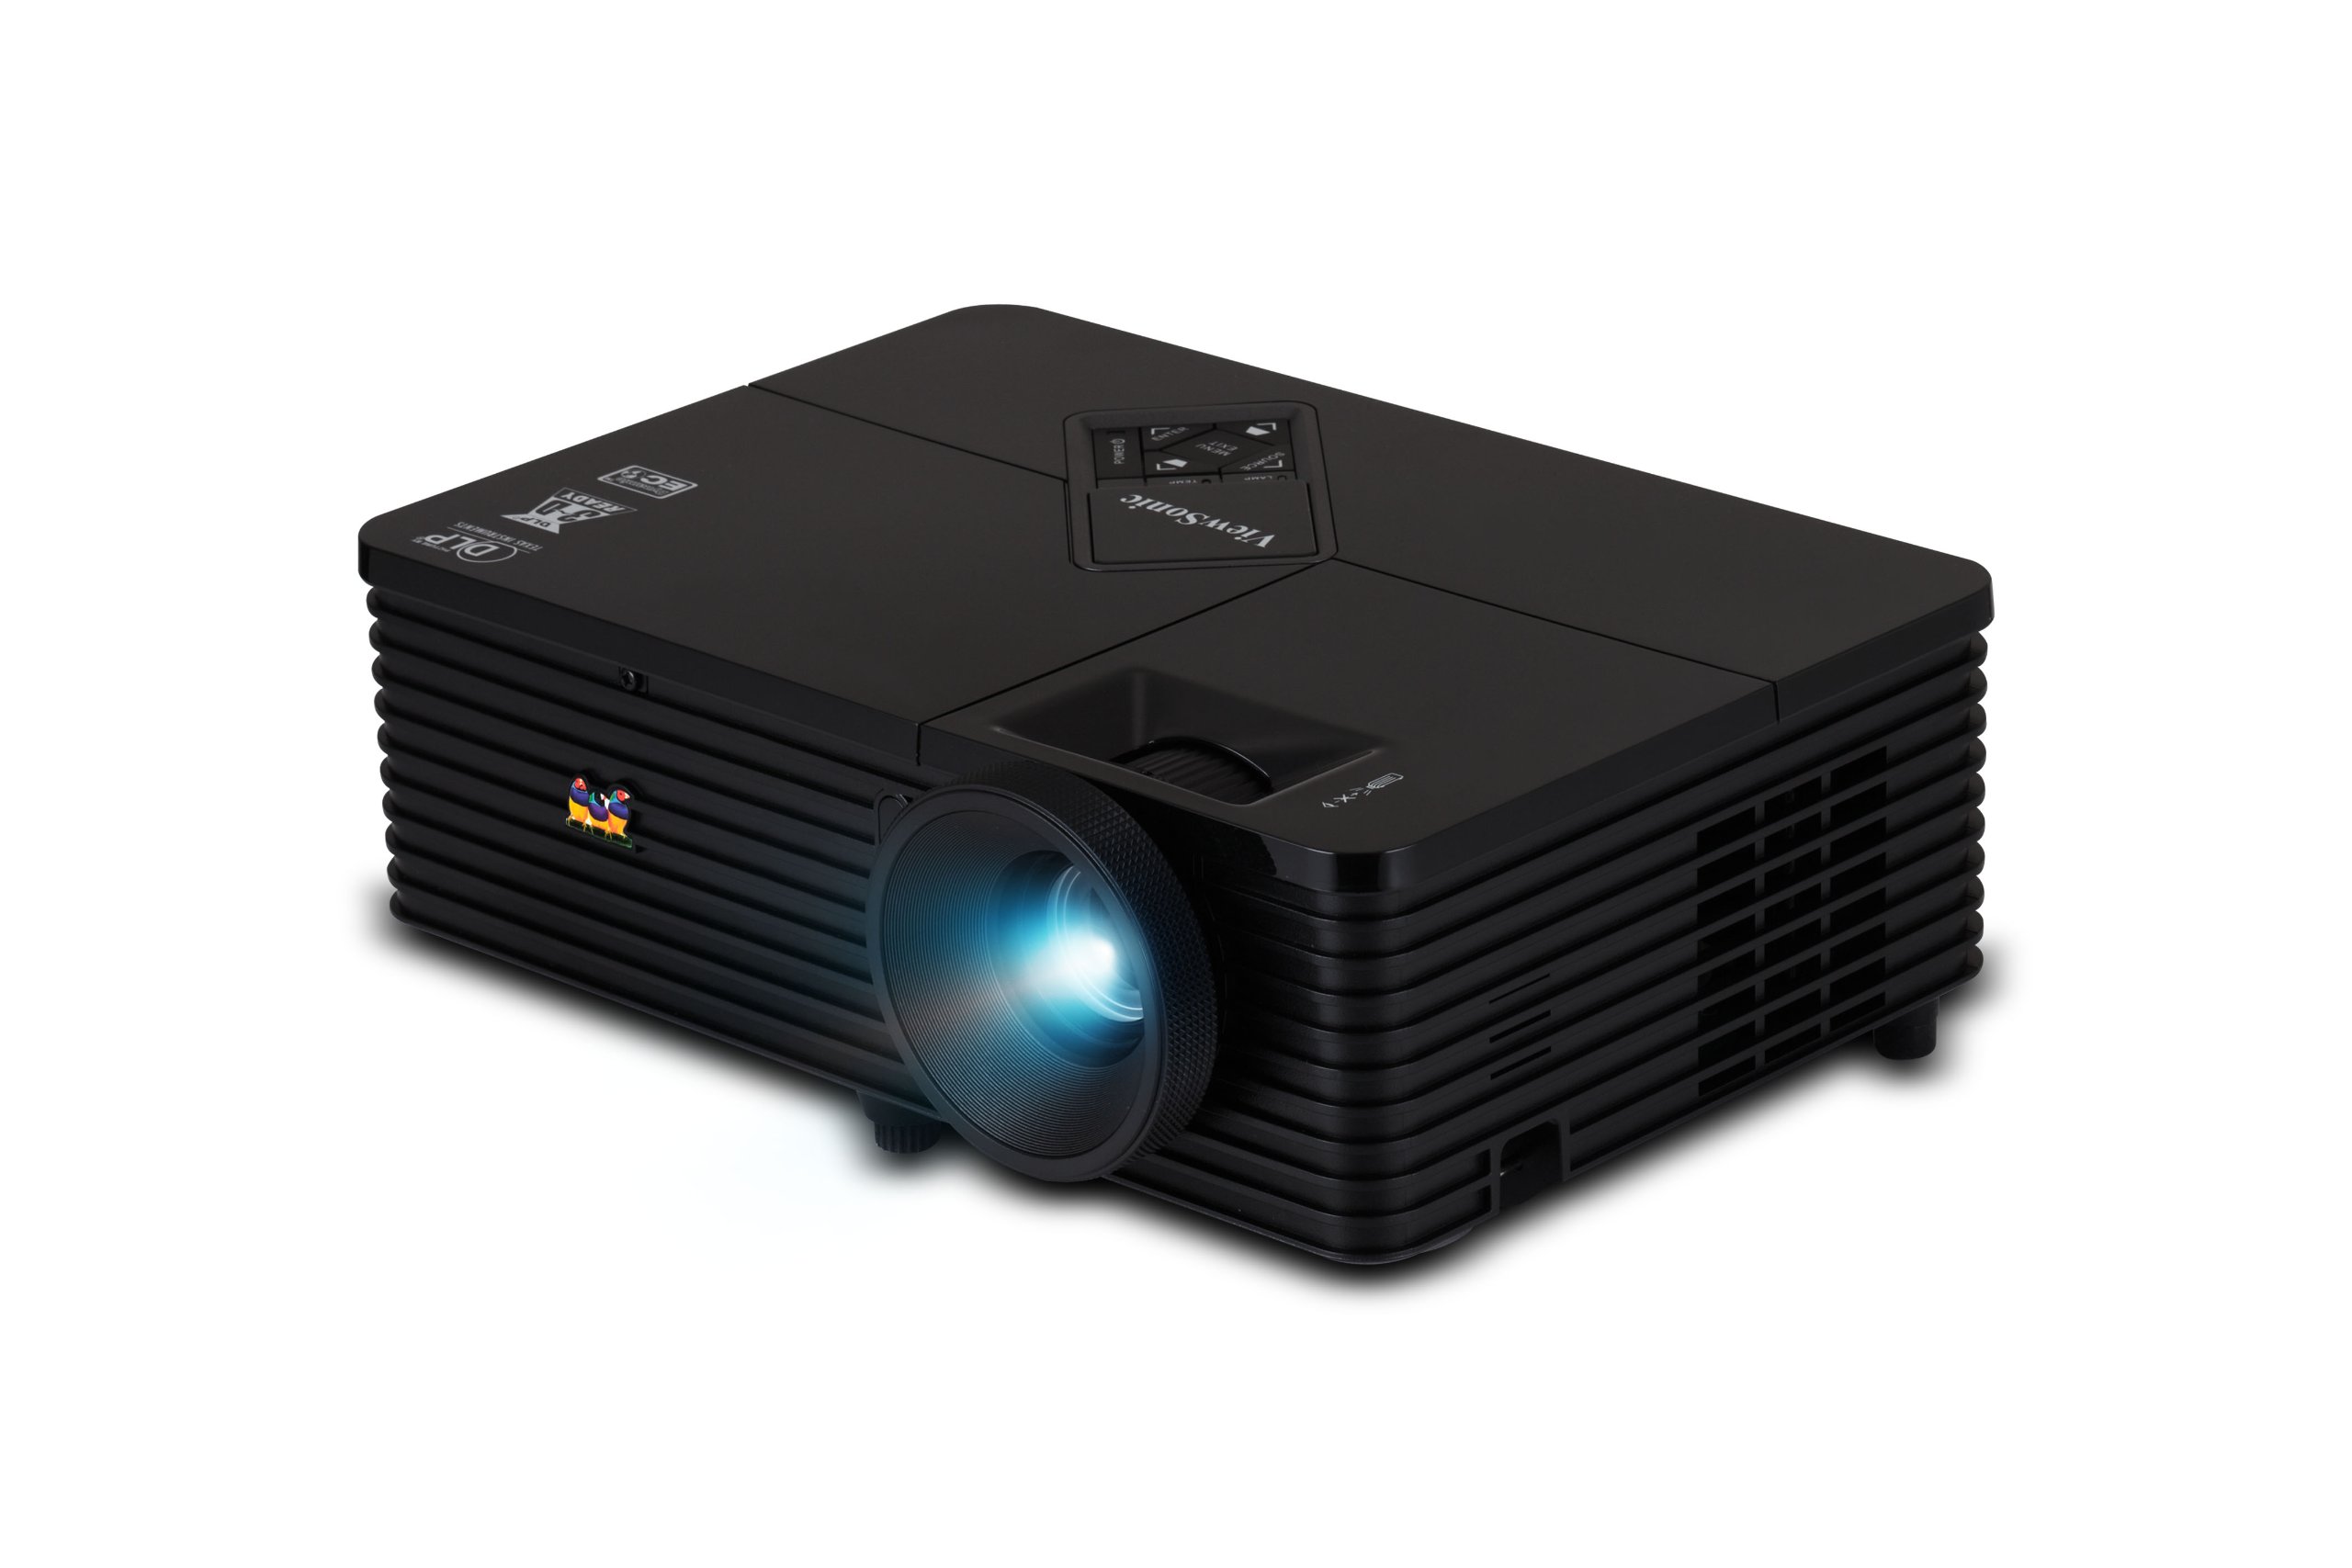 ViewSonic PJD5232 XGA DLP Projector, 2800 ANSI Lumens, PC 3D-Ready/120Hz, Black